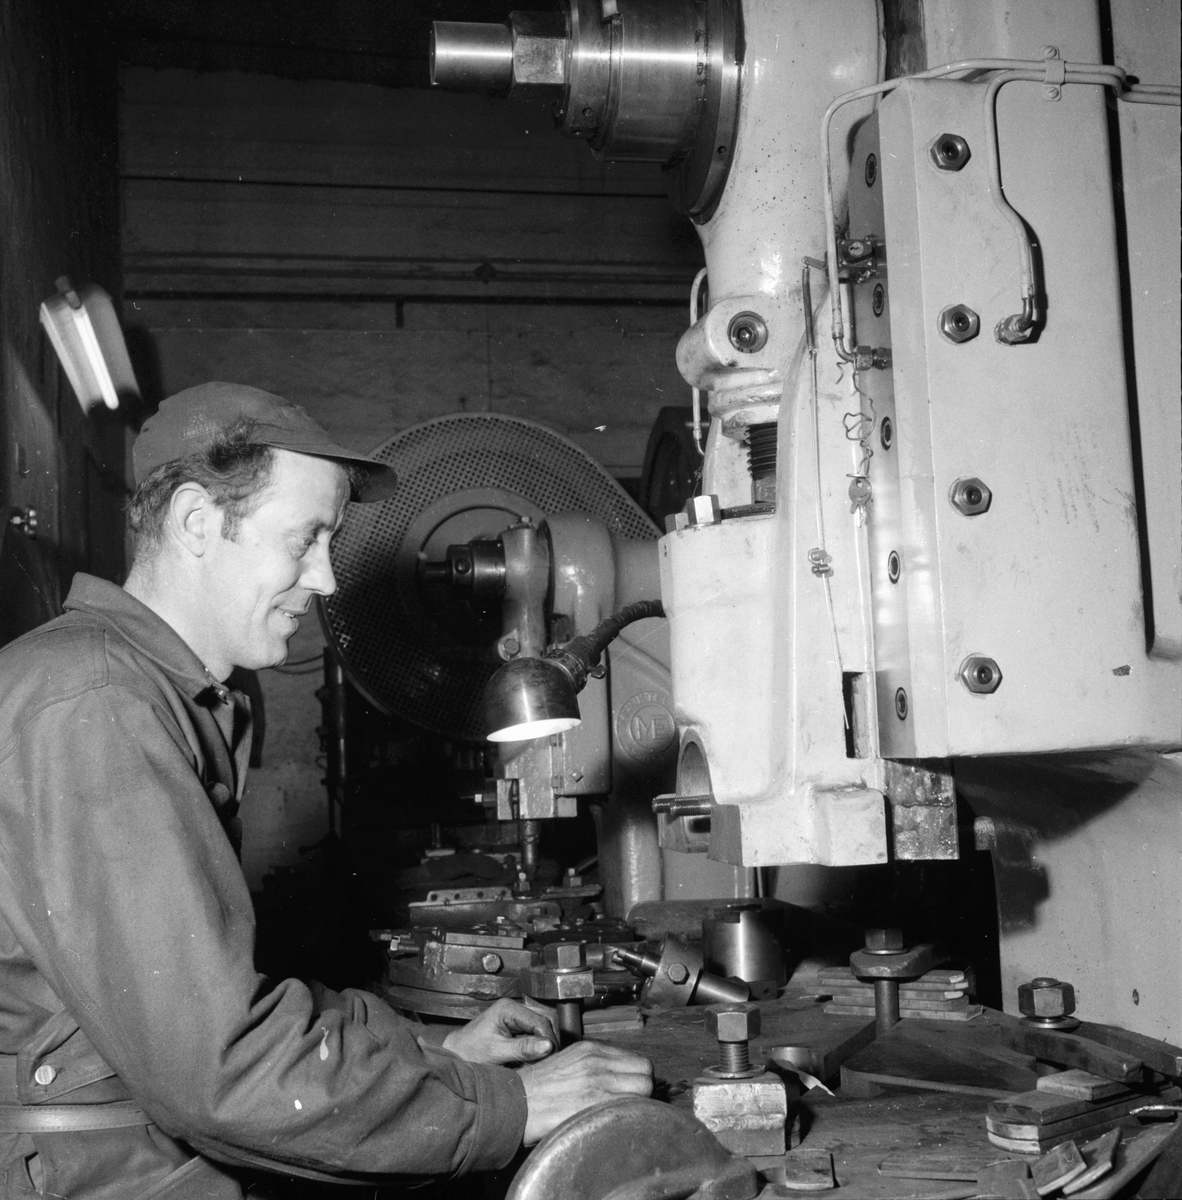 Lingbo verkstäder.
Sven Eklund vid en 100 tons excenterpress där länken till Lingbo-kedjan stansas. Kapaciteten är mycket hög.
13/11 1958